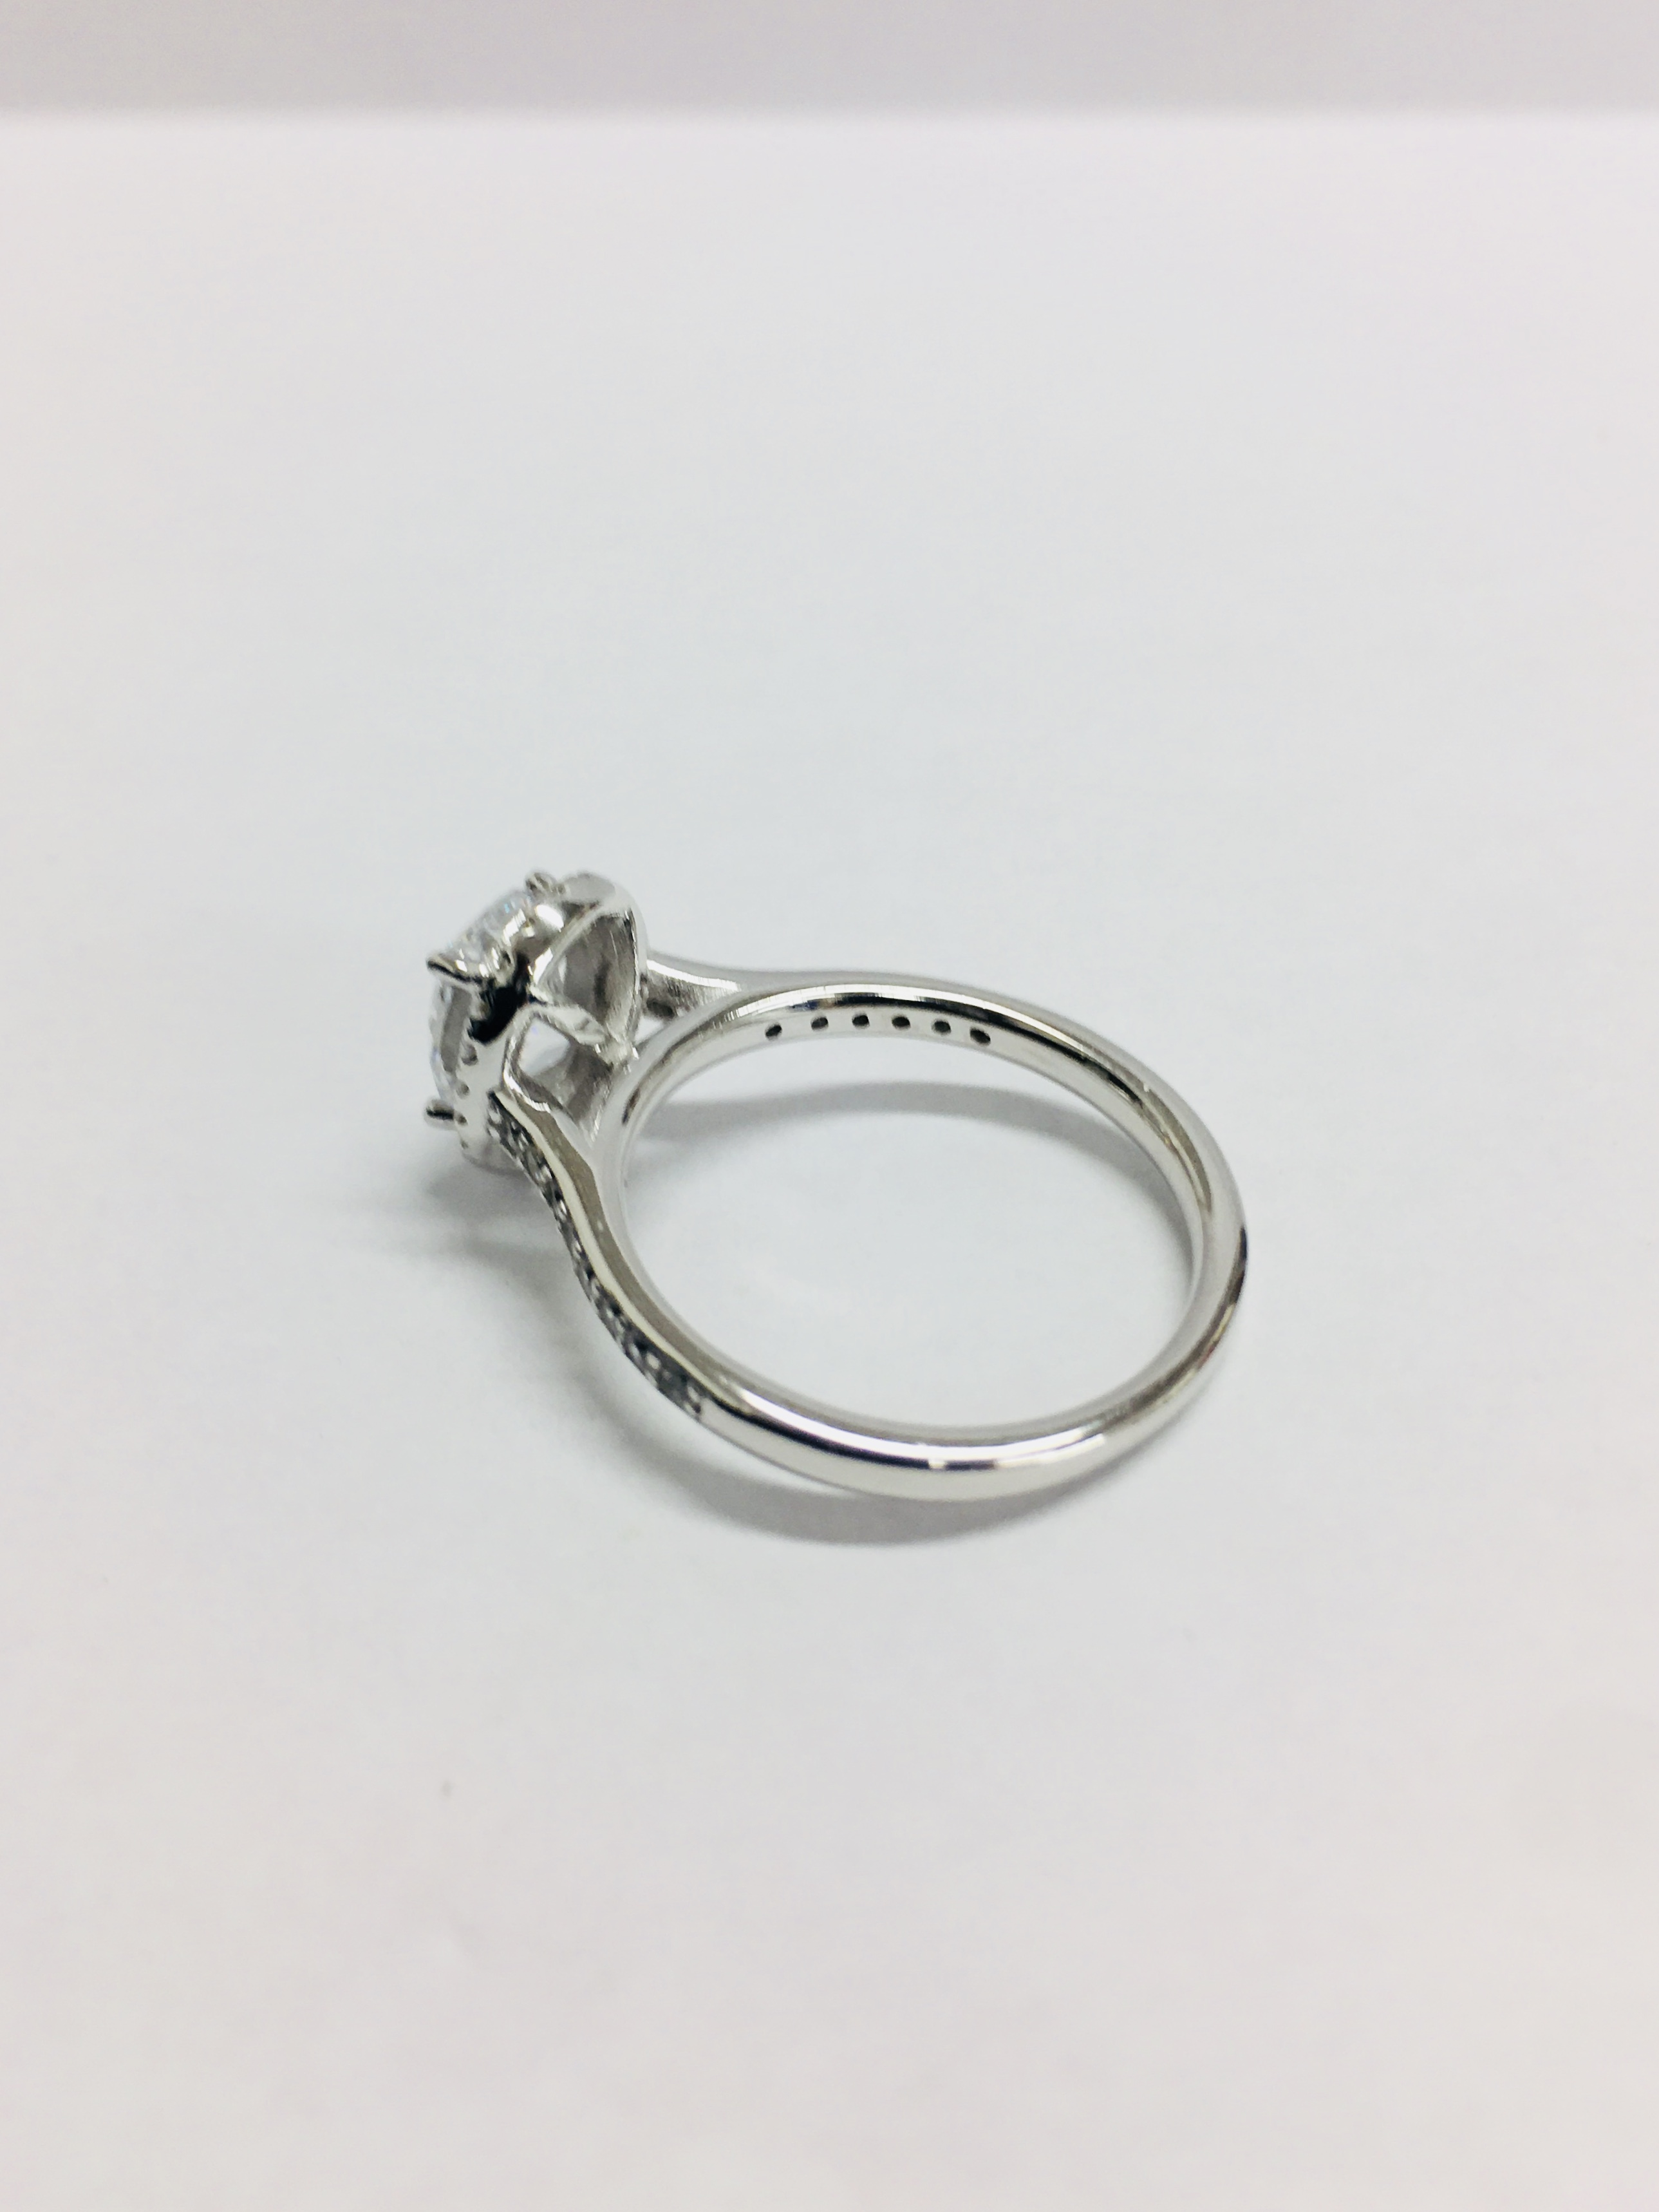 1.15Ct Diamond Set Solitaire Ring Set In Platinum. - Image 4 of 6